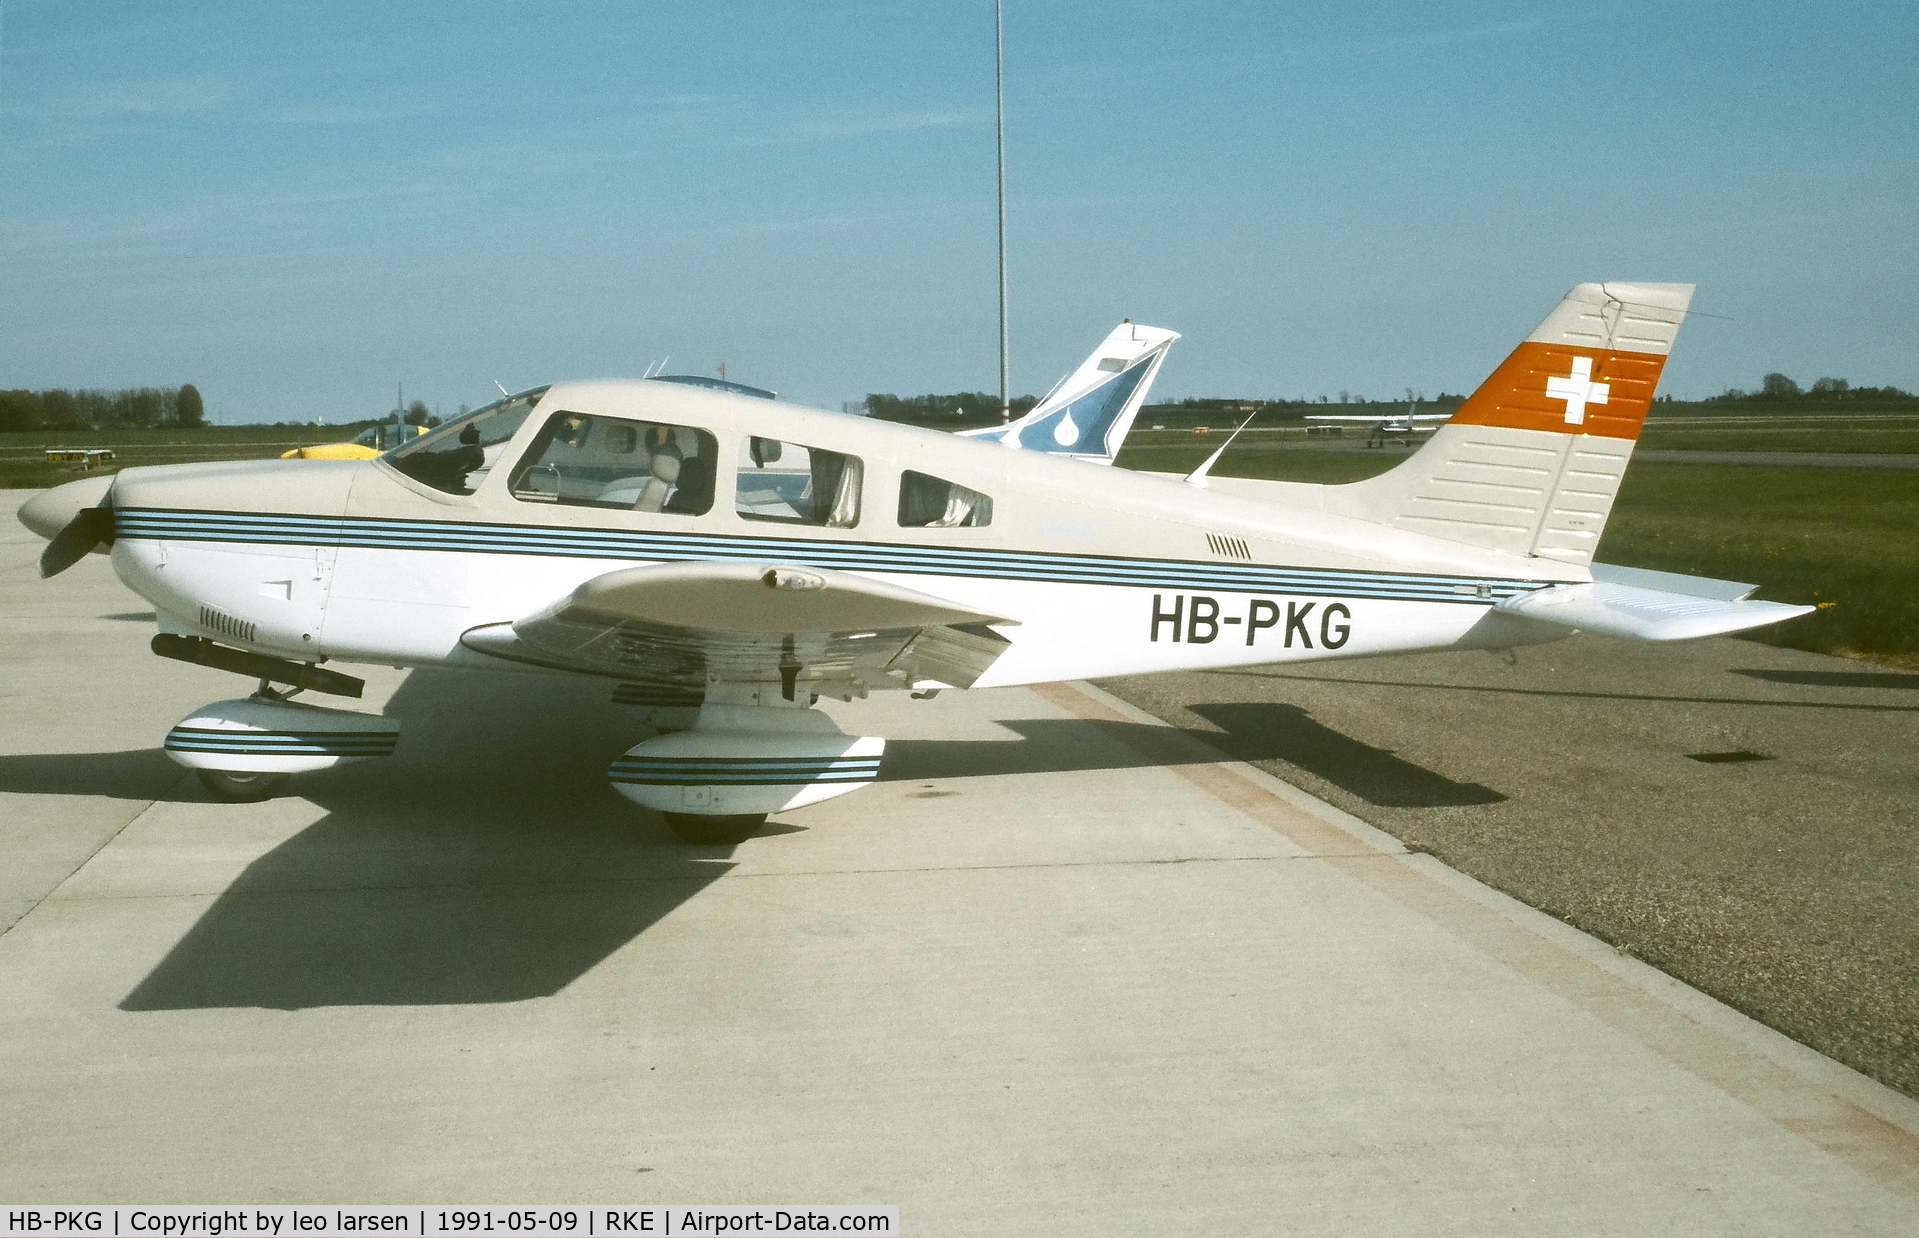 HB-PKG, 1986 Piper PA-28-181 Archer II C/N 2890008, Roskilde 9.5.1991